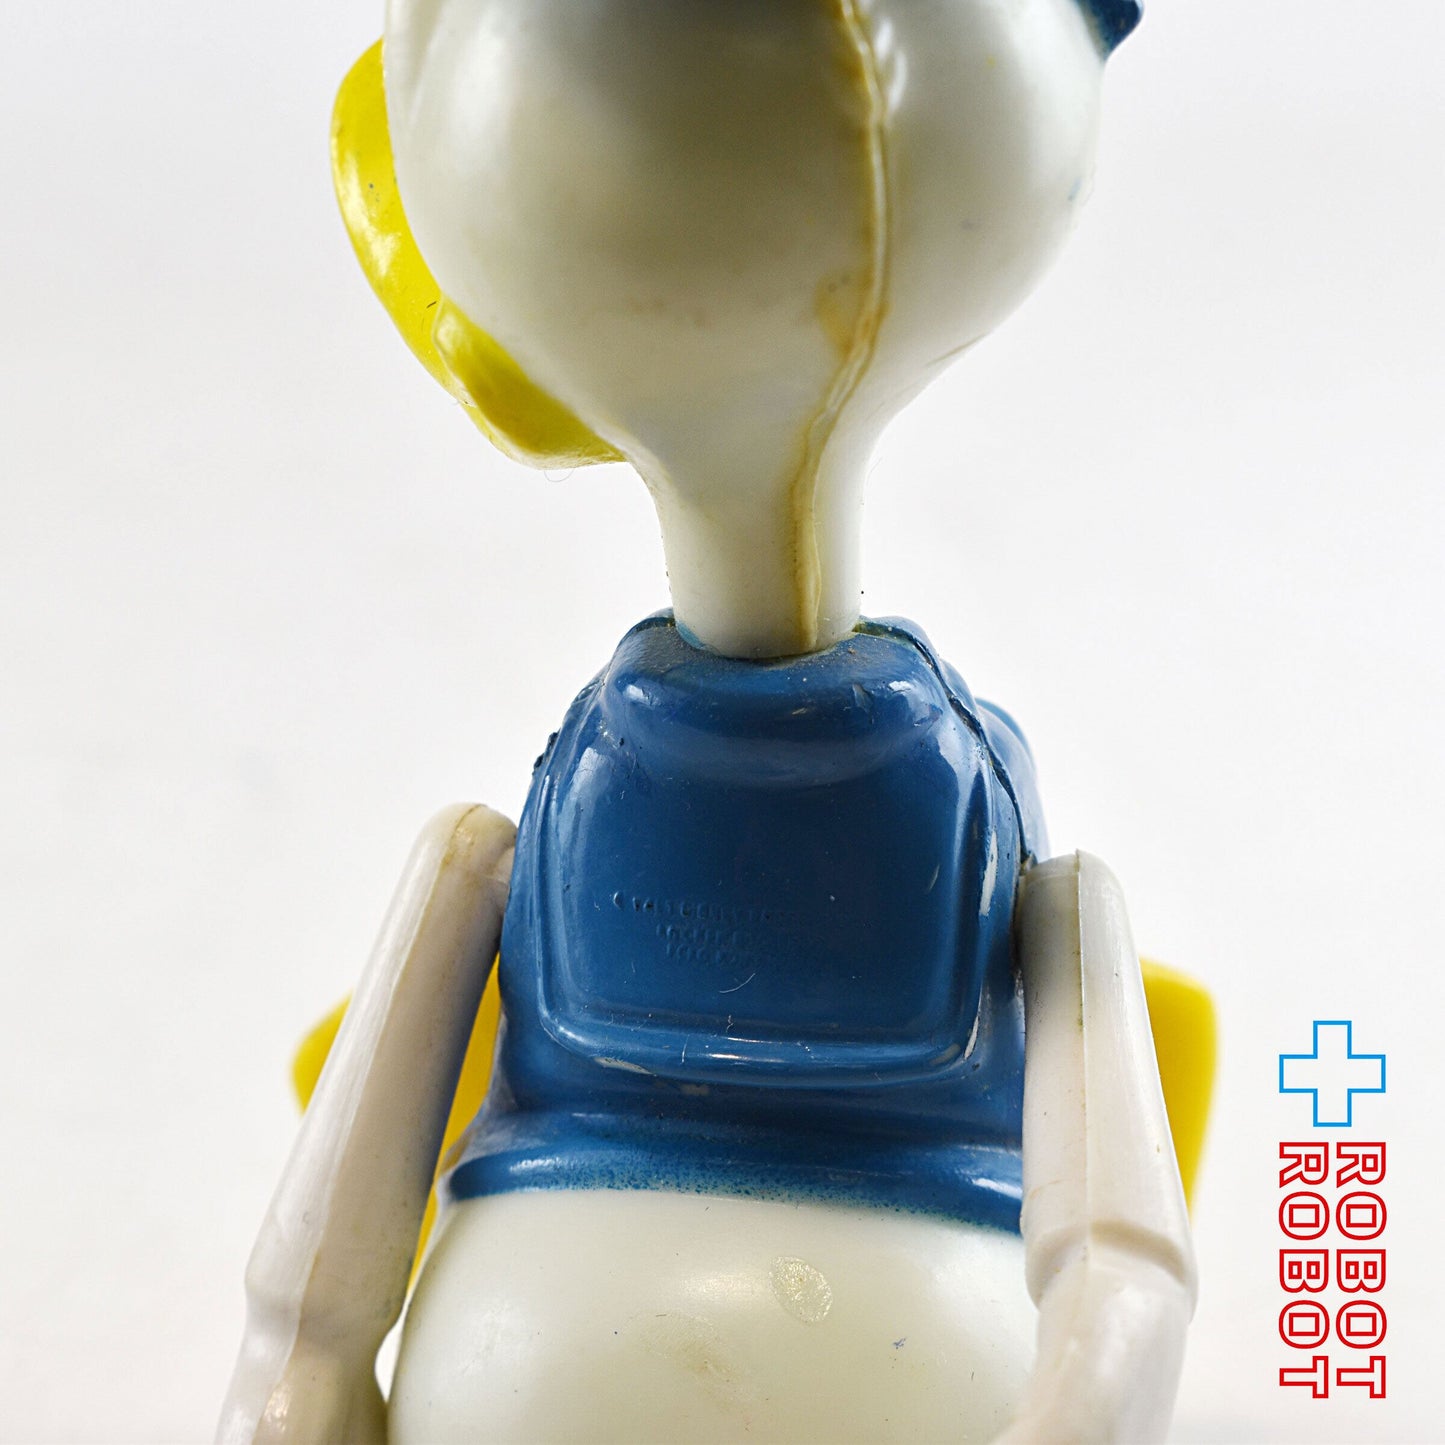 ニッカーボッカー ディズニー ドナルドダック プラスチック フィギュア メイドイン香港